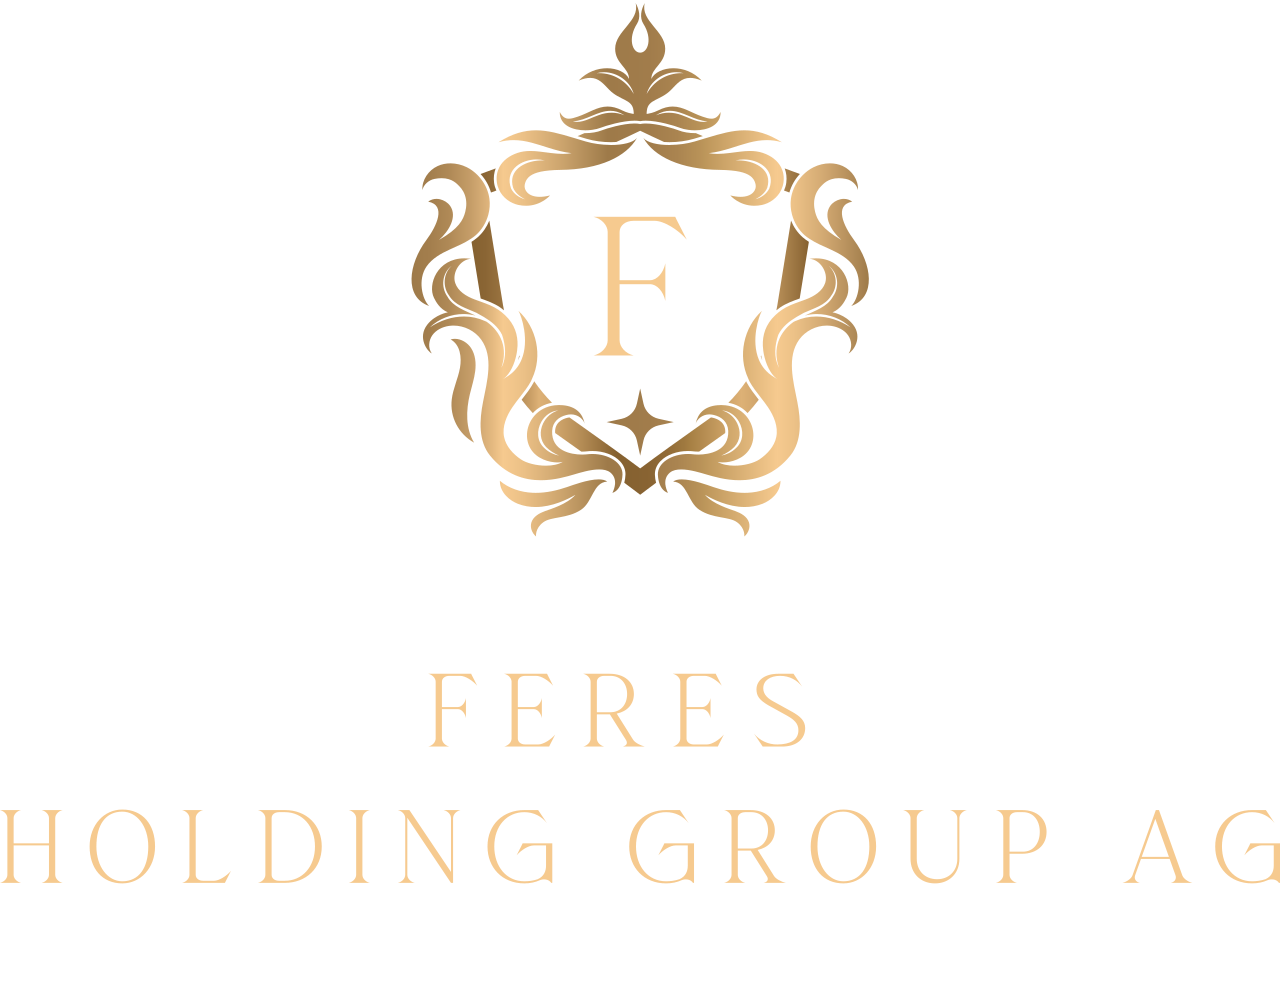 FERES Holding Group AG's logo